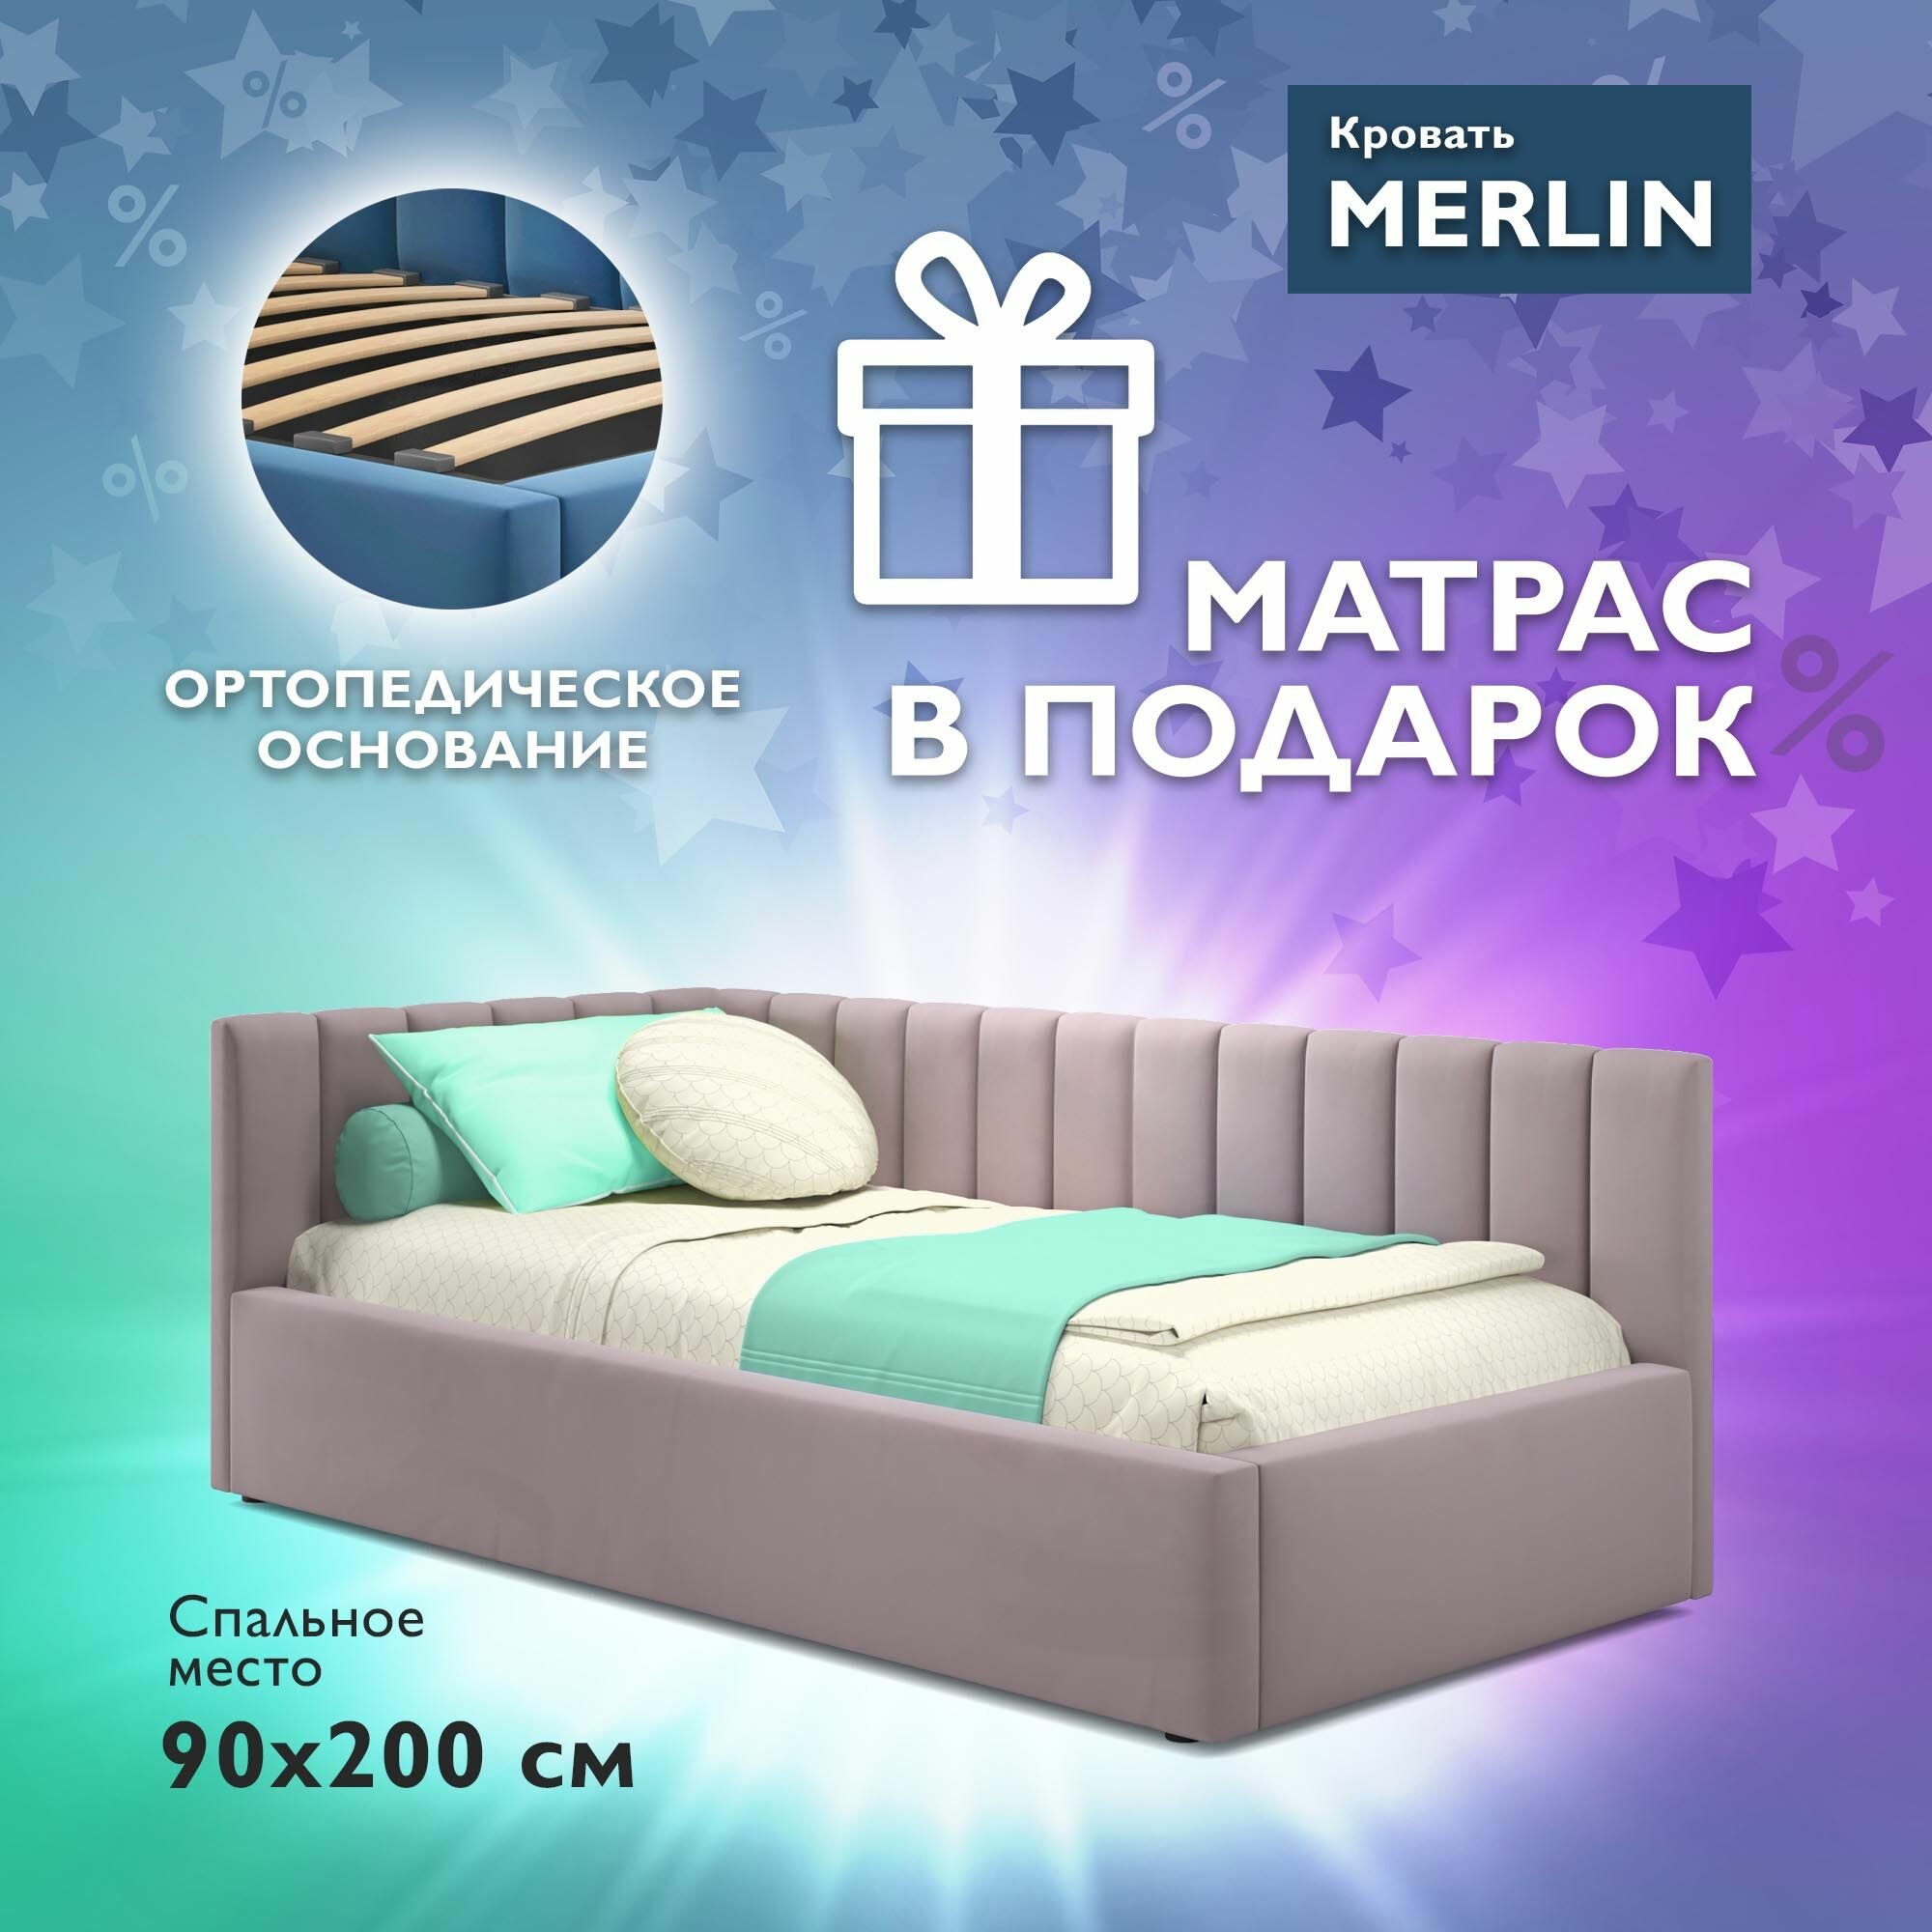 Односпальная угловая кровать c матрасом, Тахта 90х200 с мягкой спинкой "MERLIN-KORAL"